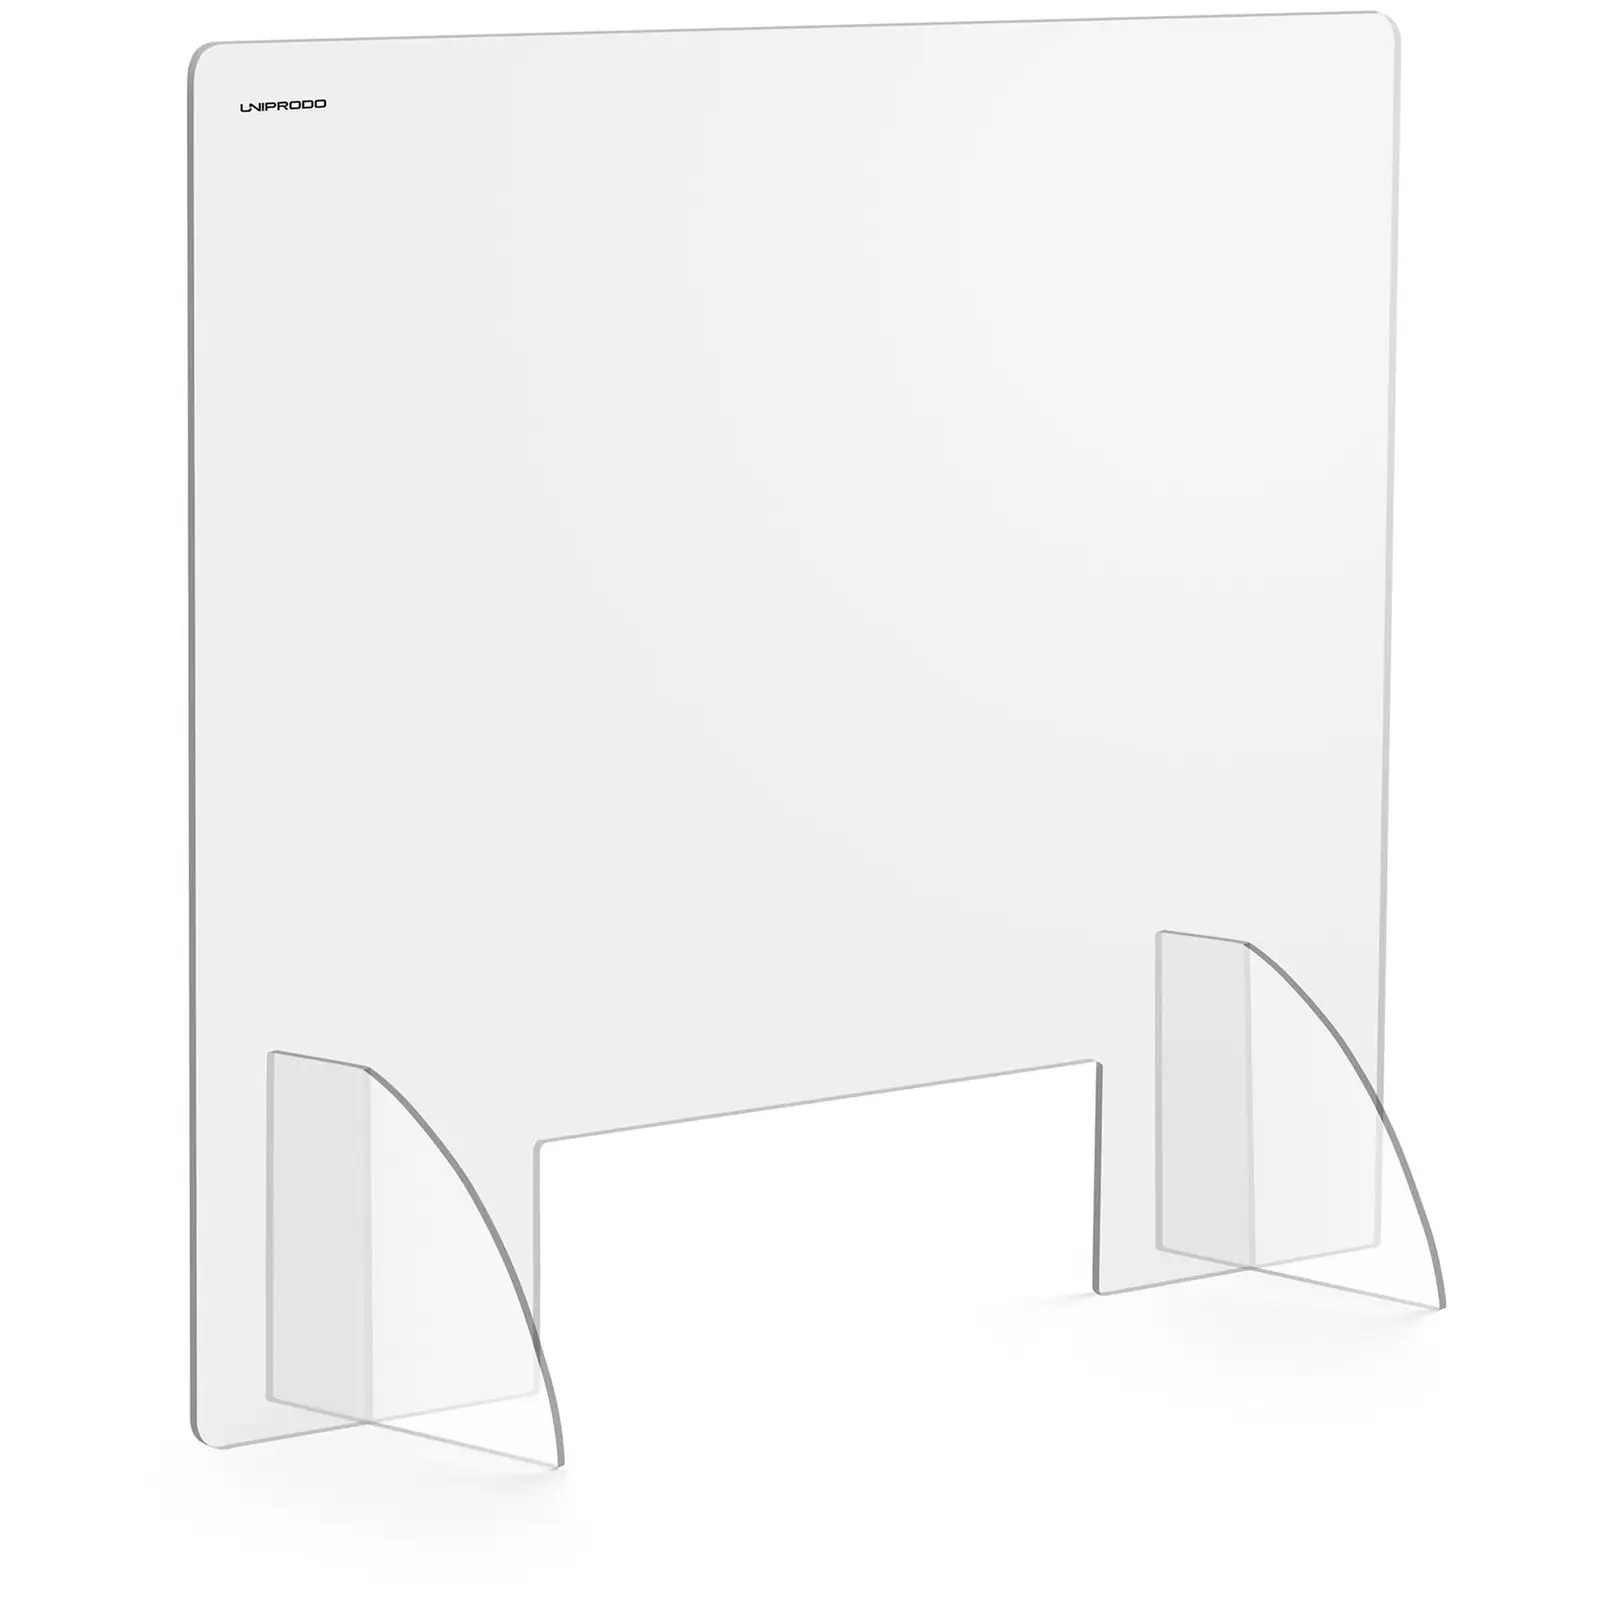 Ochranná přepážka - 95 x 80 cm - akrylátové sklo - výdejové okénko 30 x 10 cm